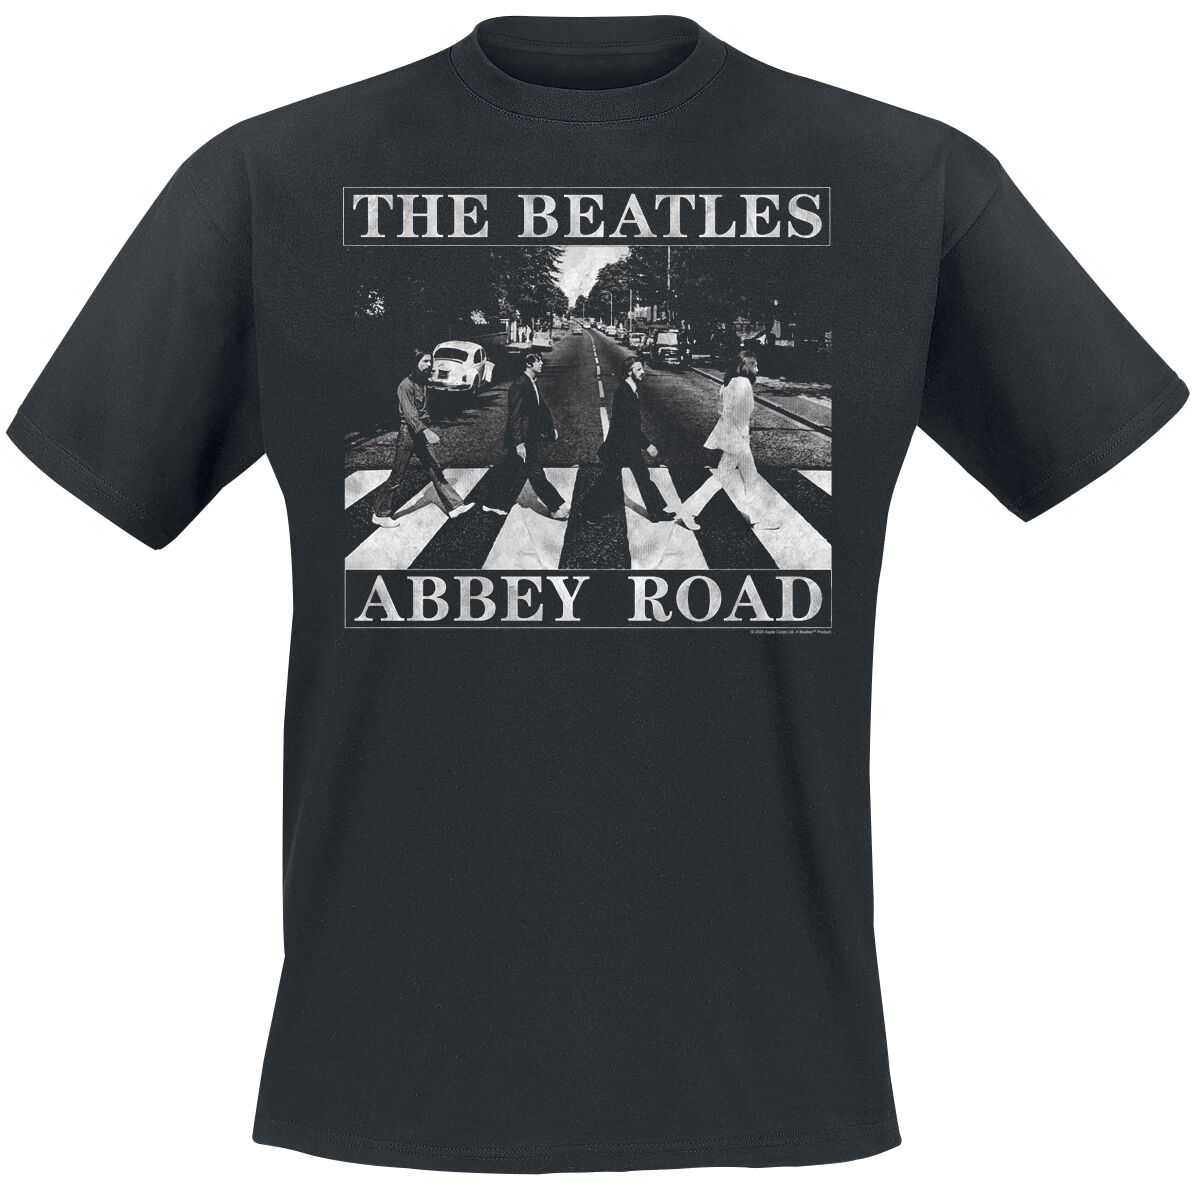 The Beatles T-Shirt - Abbey Road Distressed - S bis XXL - für Männer - Größe M - schwarz  - Lizenziertes Merchandise!